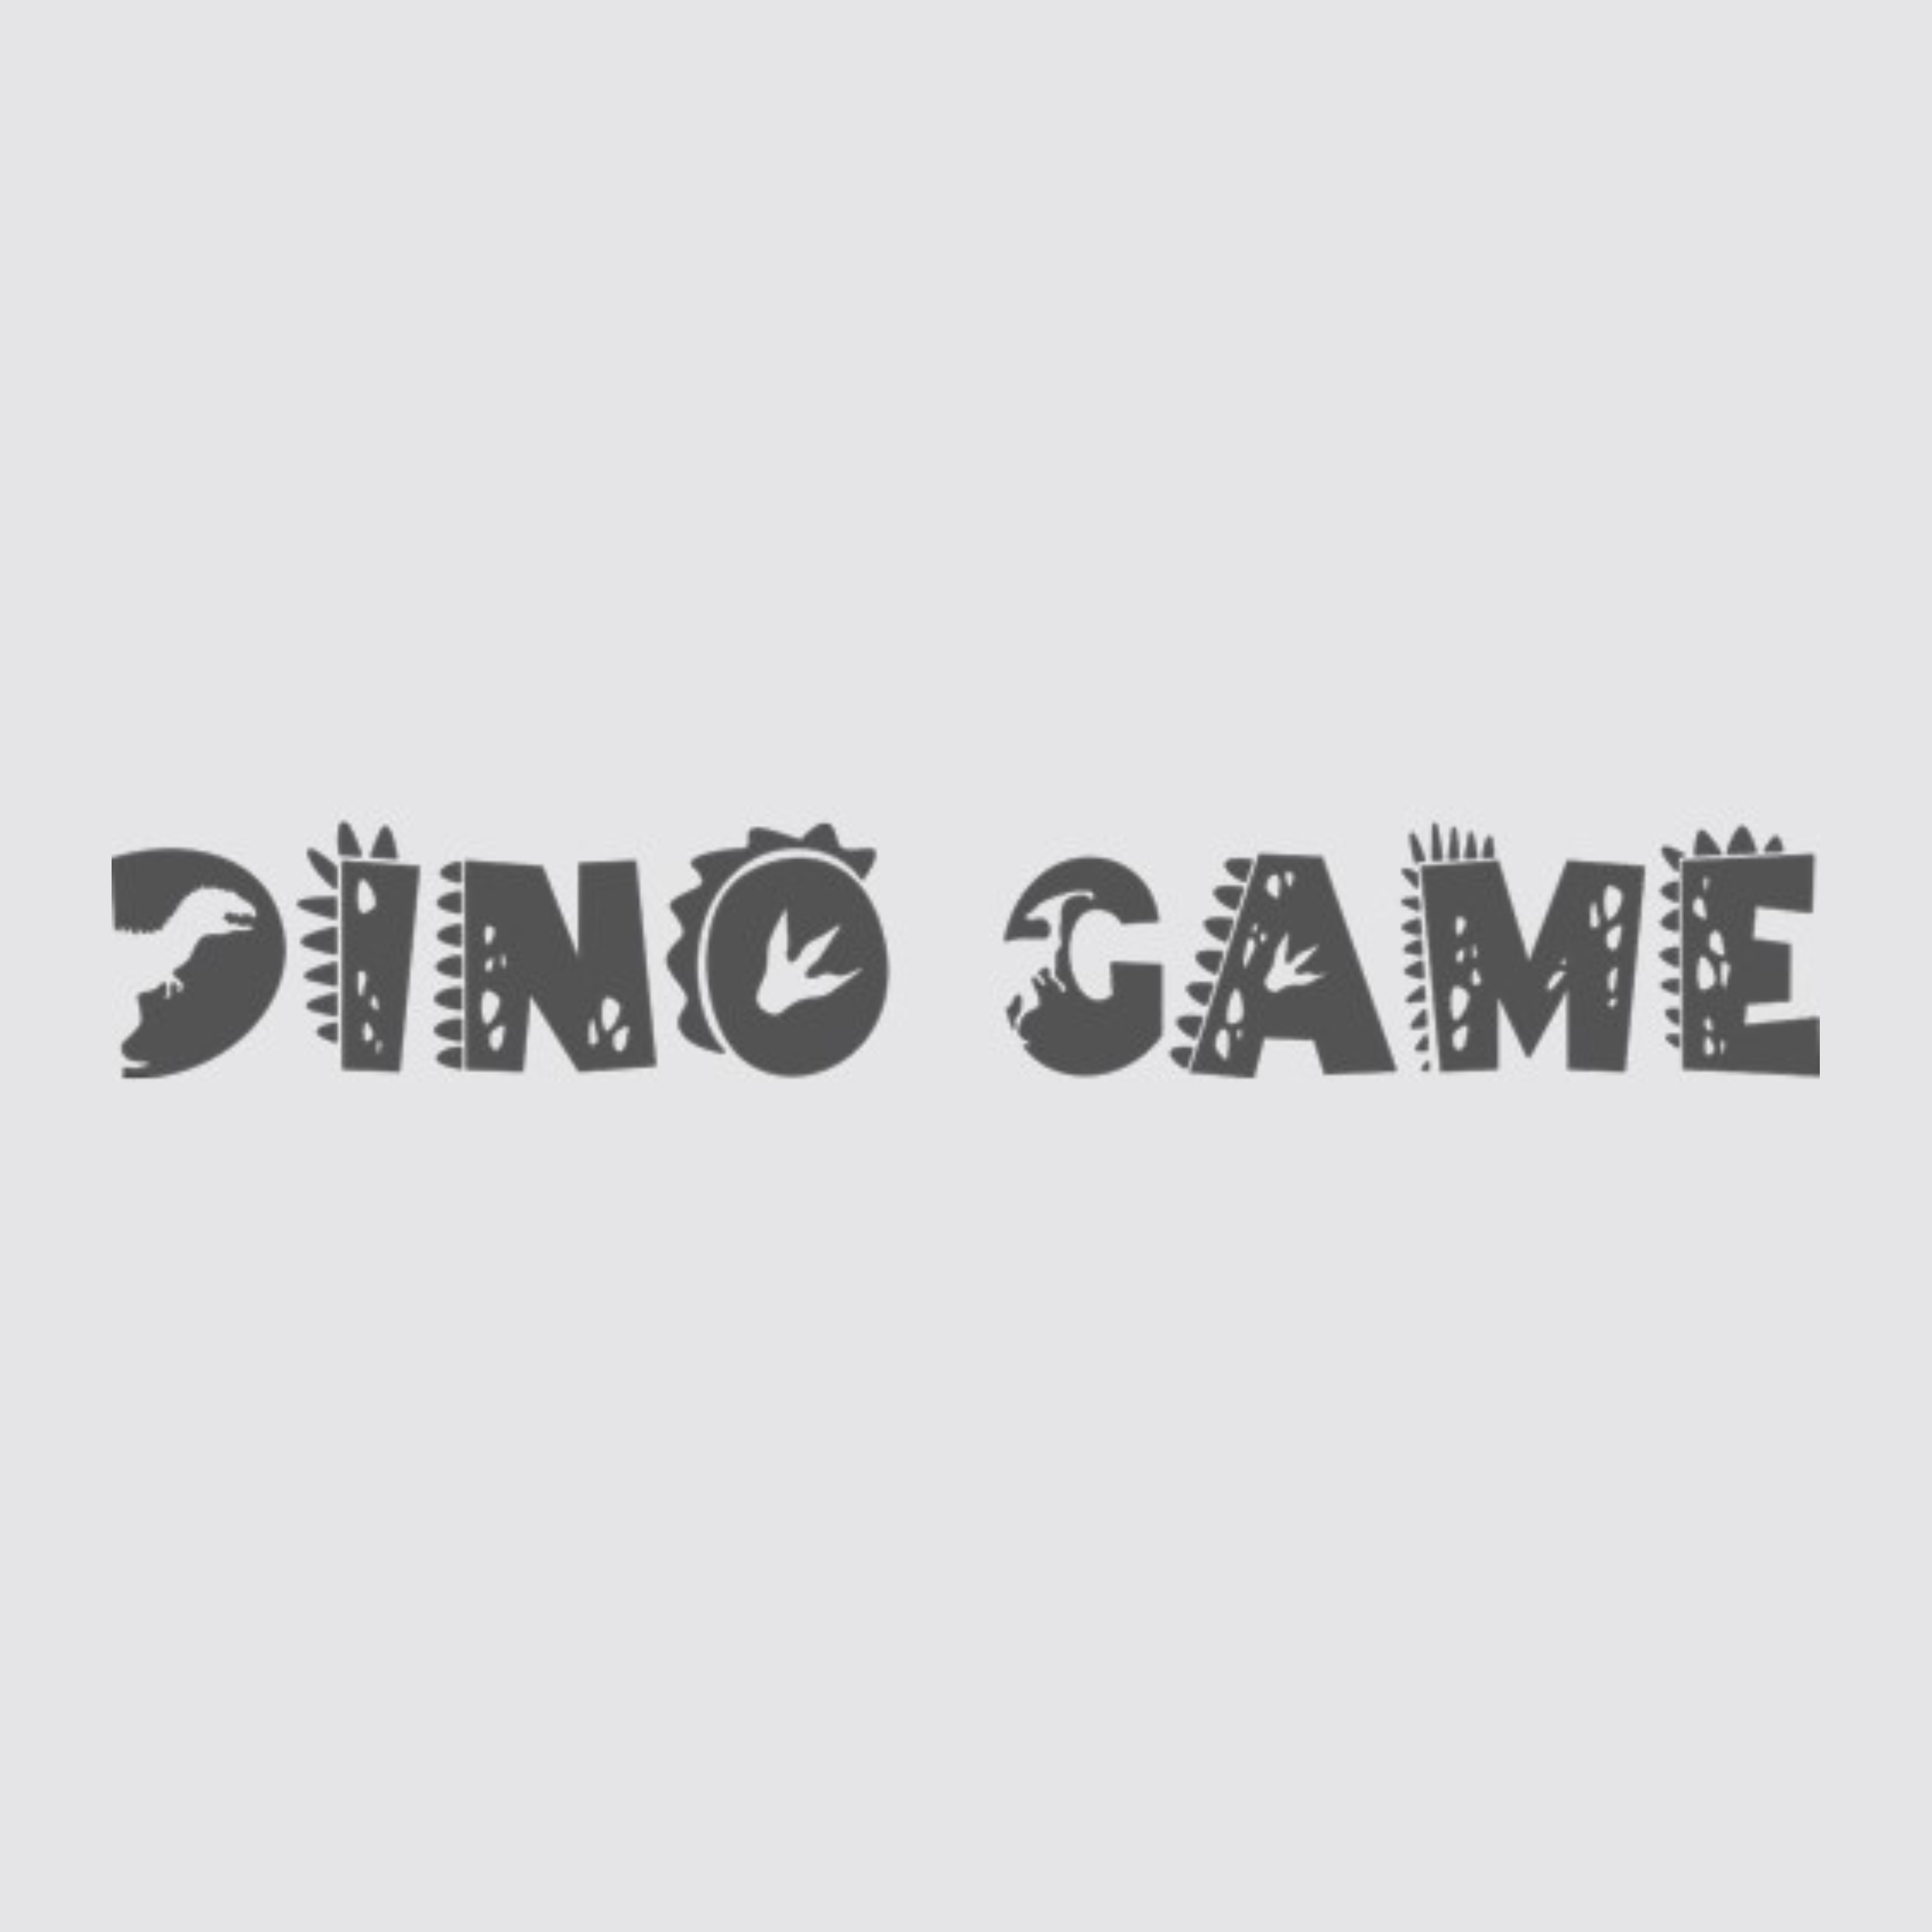 Chrome Dino Game's Profile - @dinogame